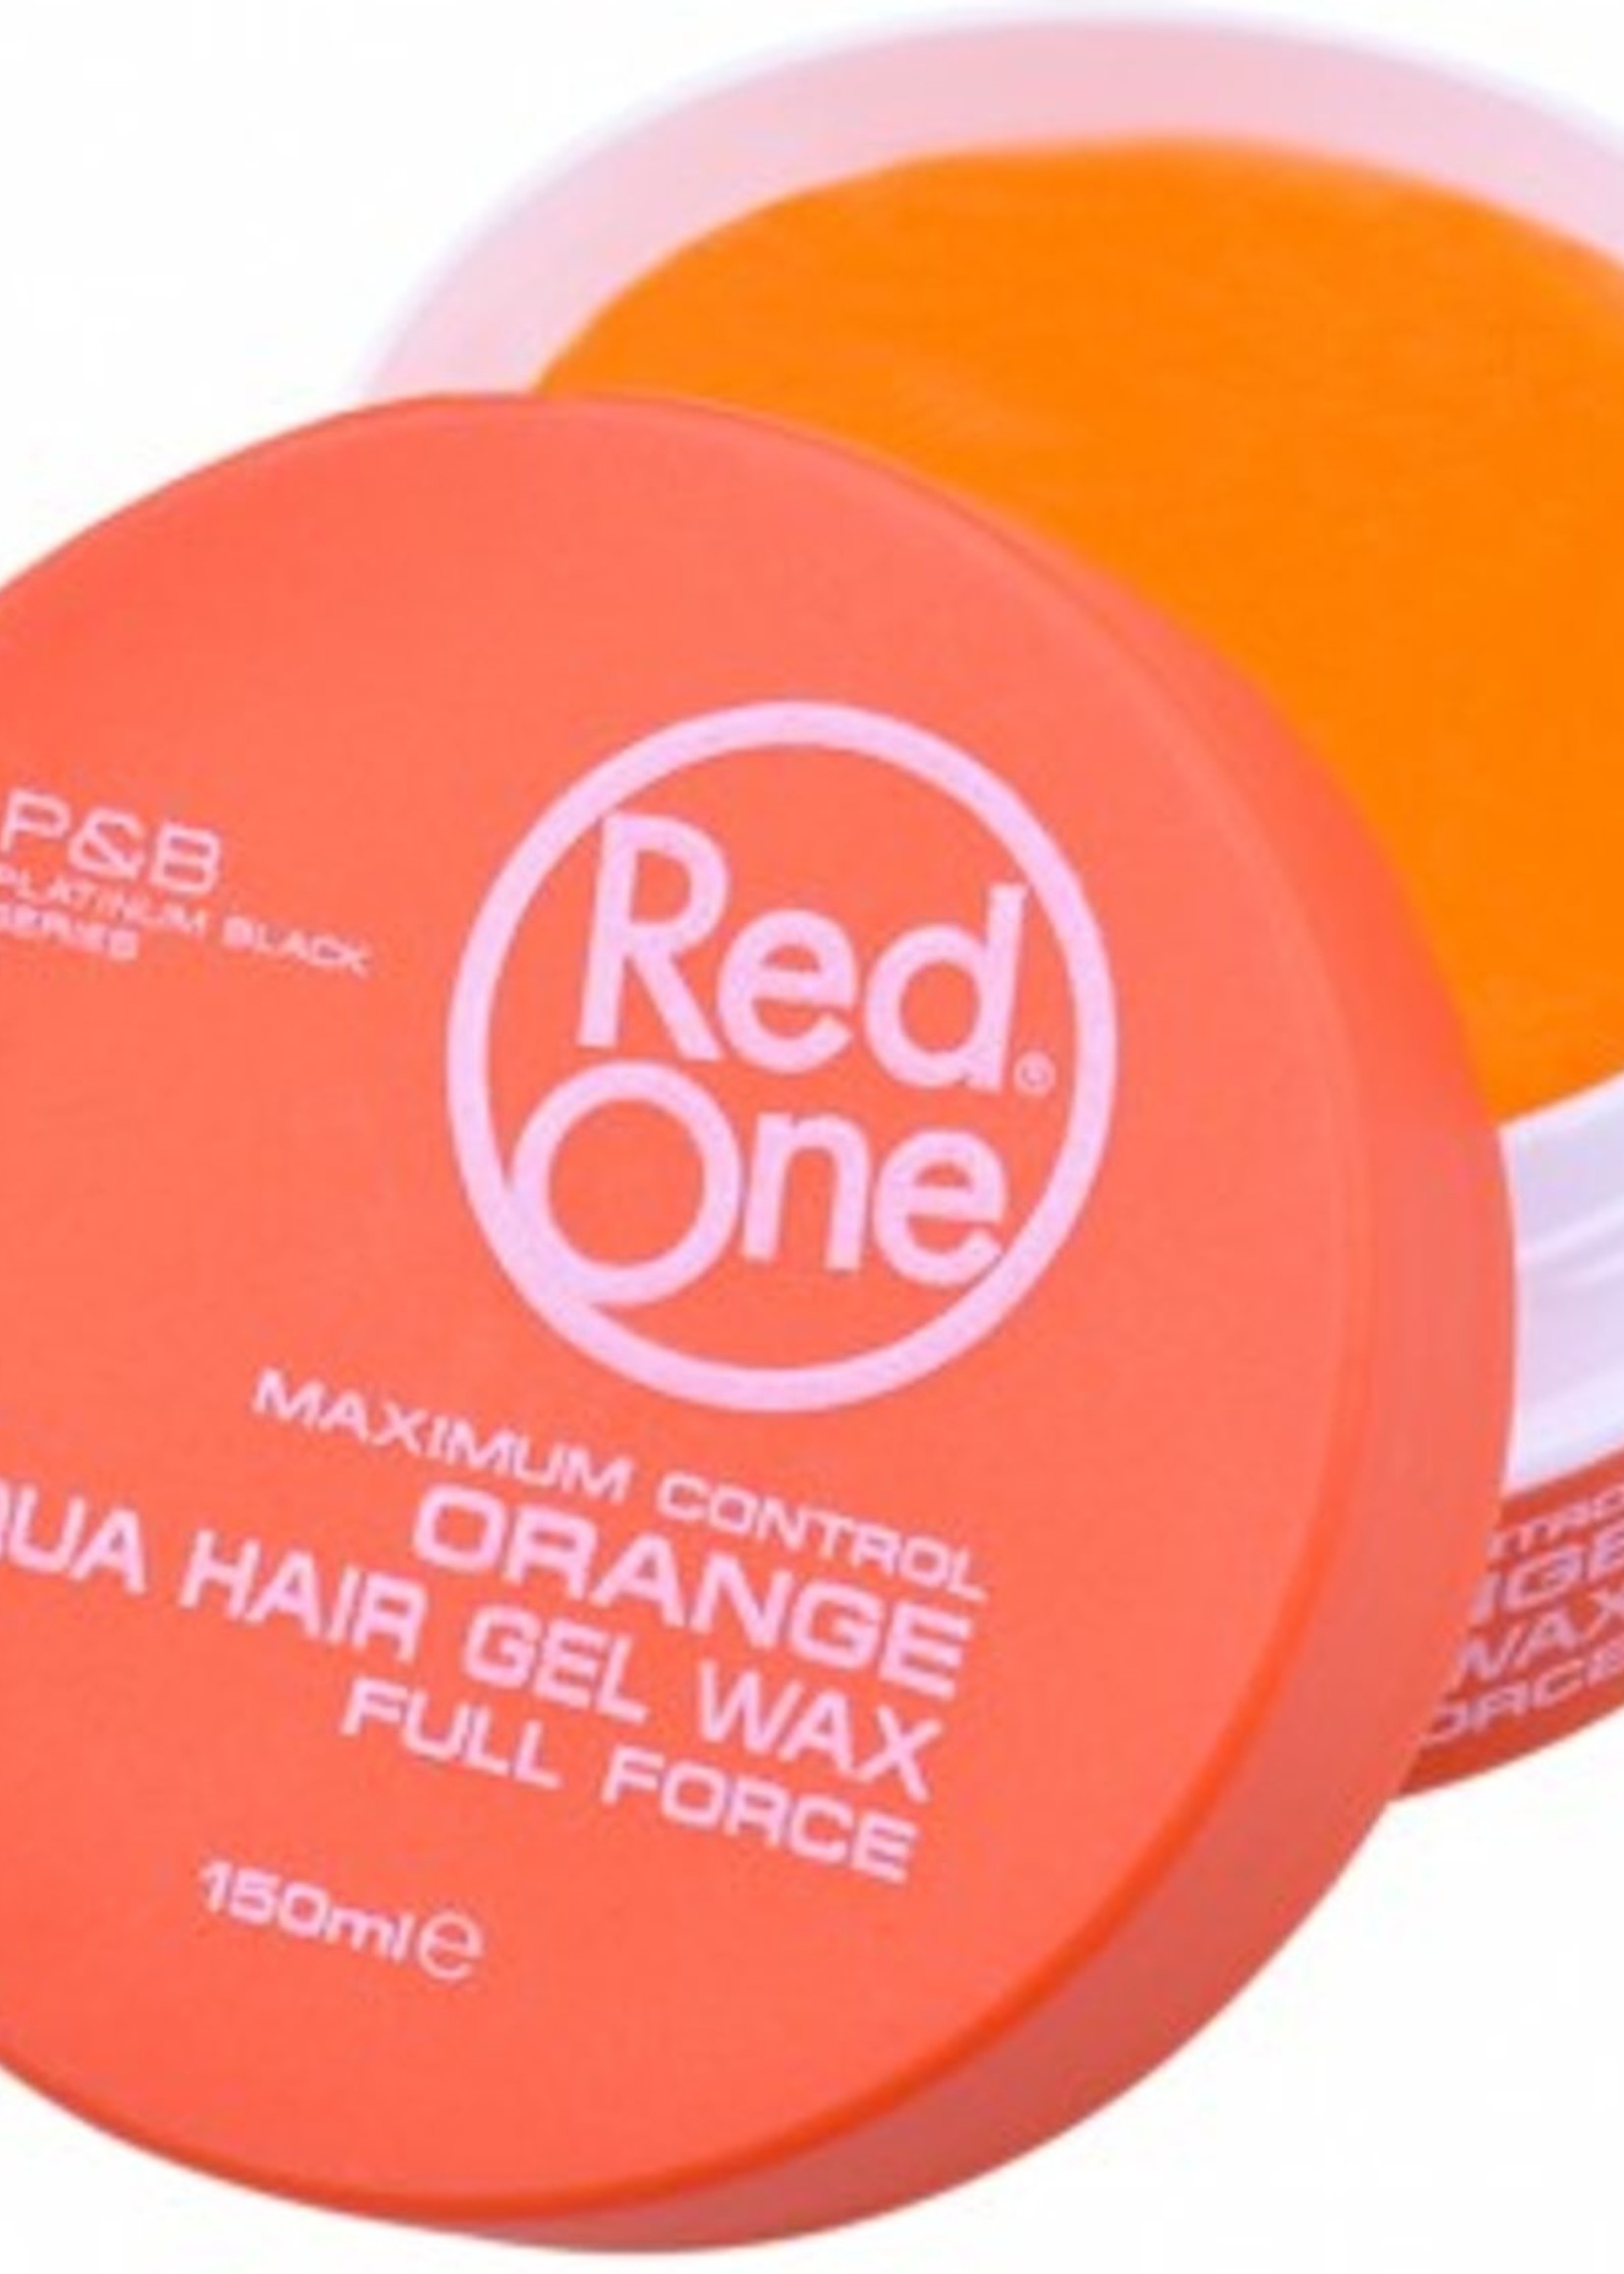 Red One   Aqua Hair wax Full Force Orange 150ml